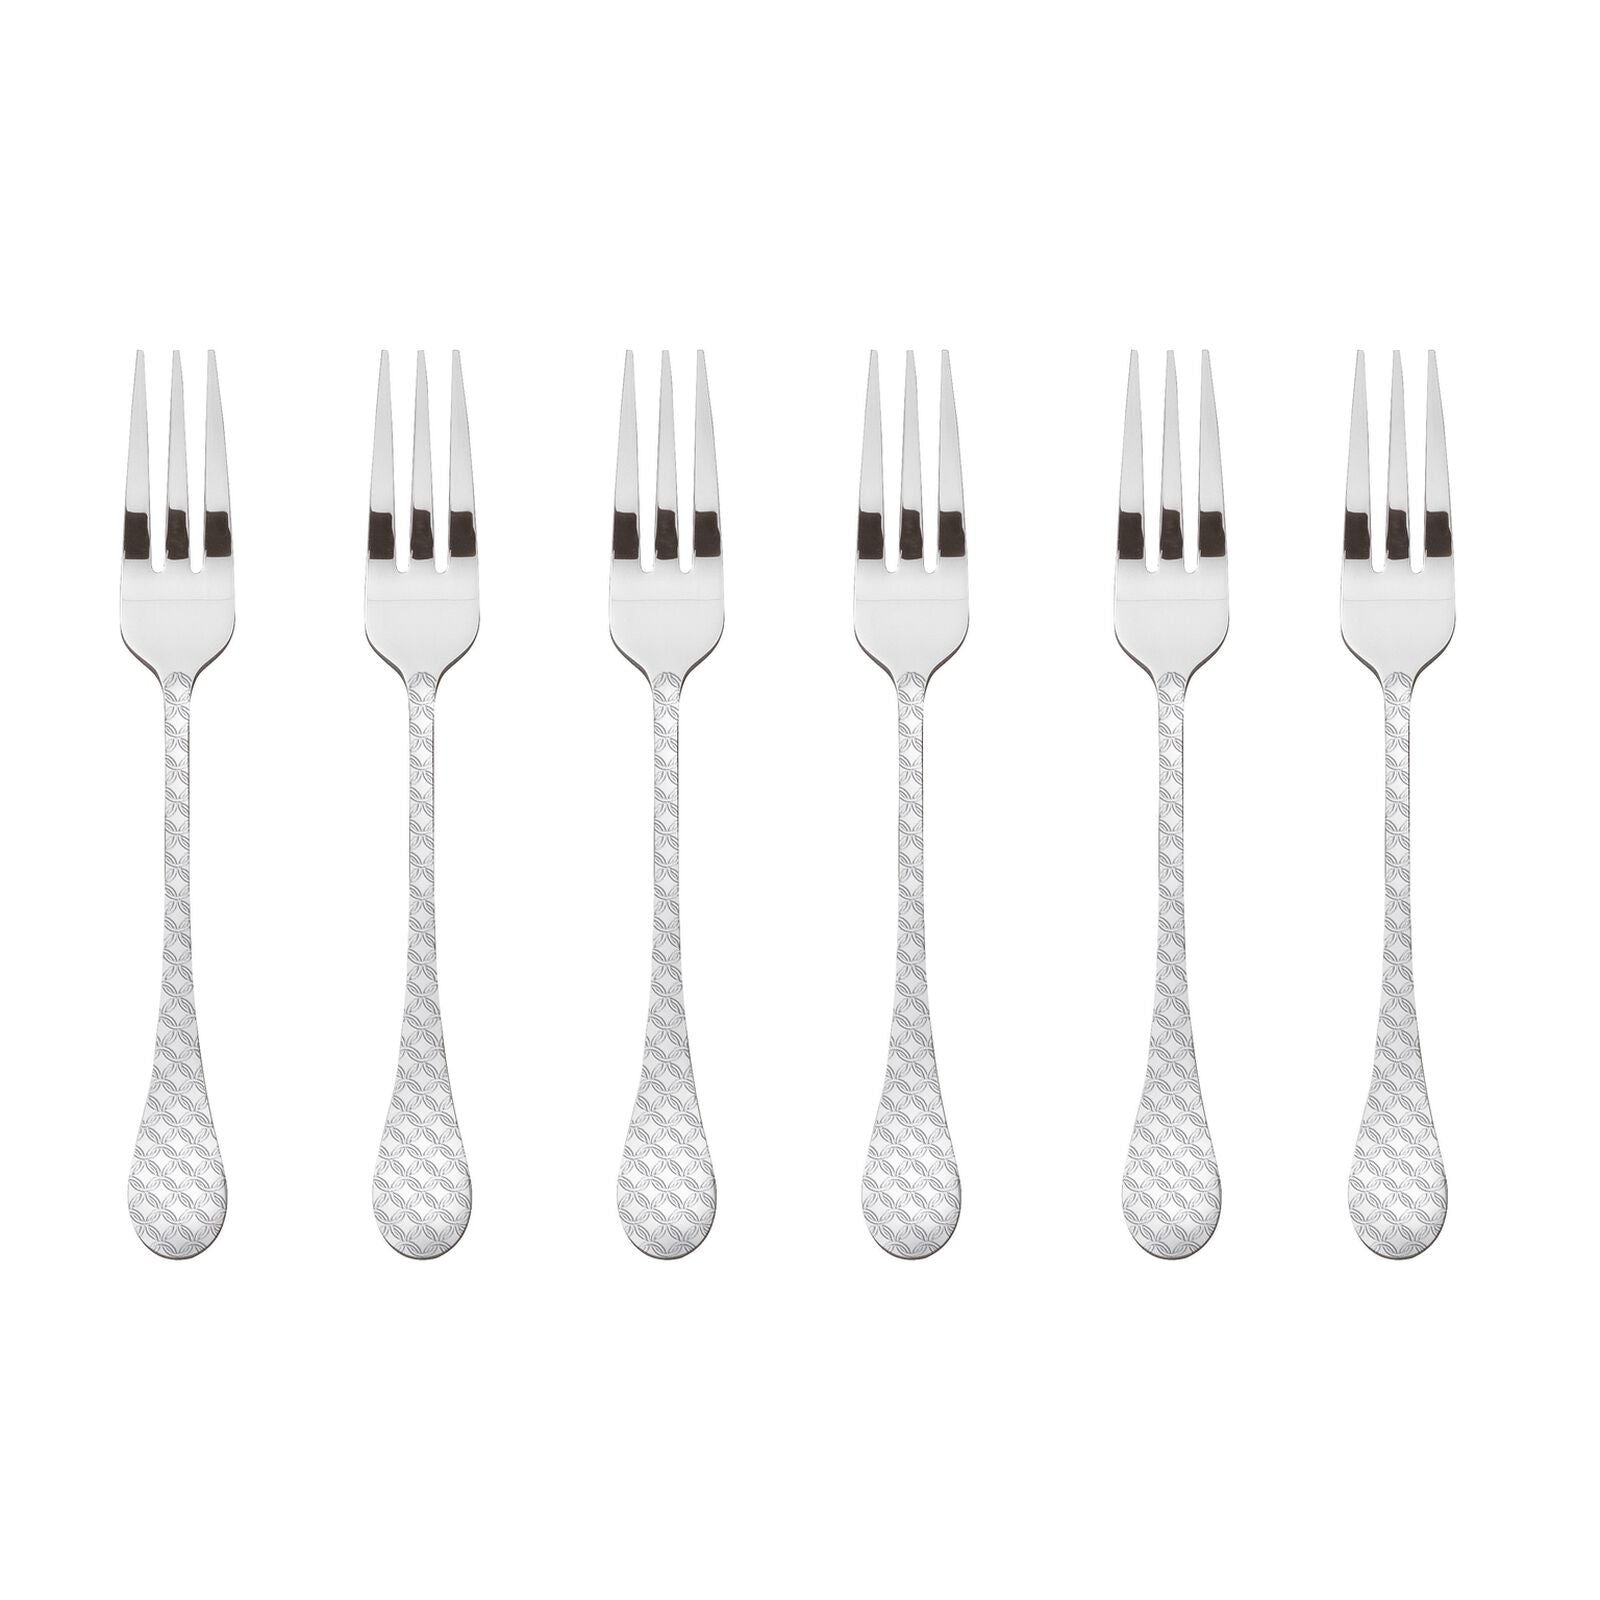 Sambonet Taormina Set of 6 Dessert Forks in Stainless Steel